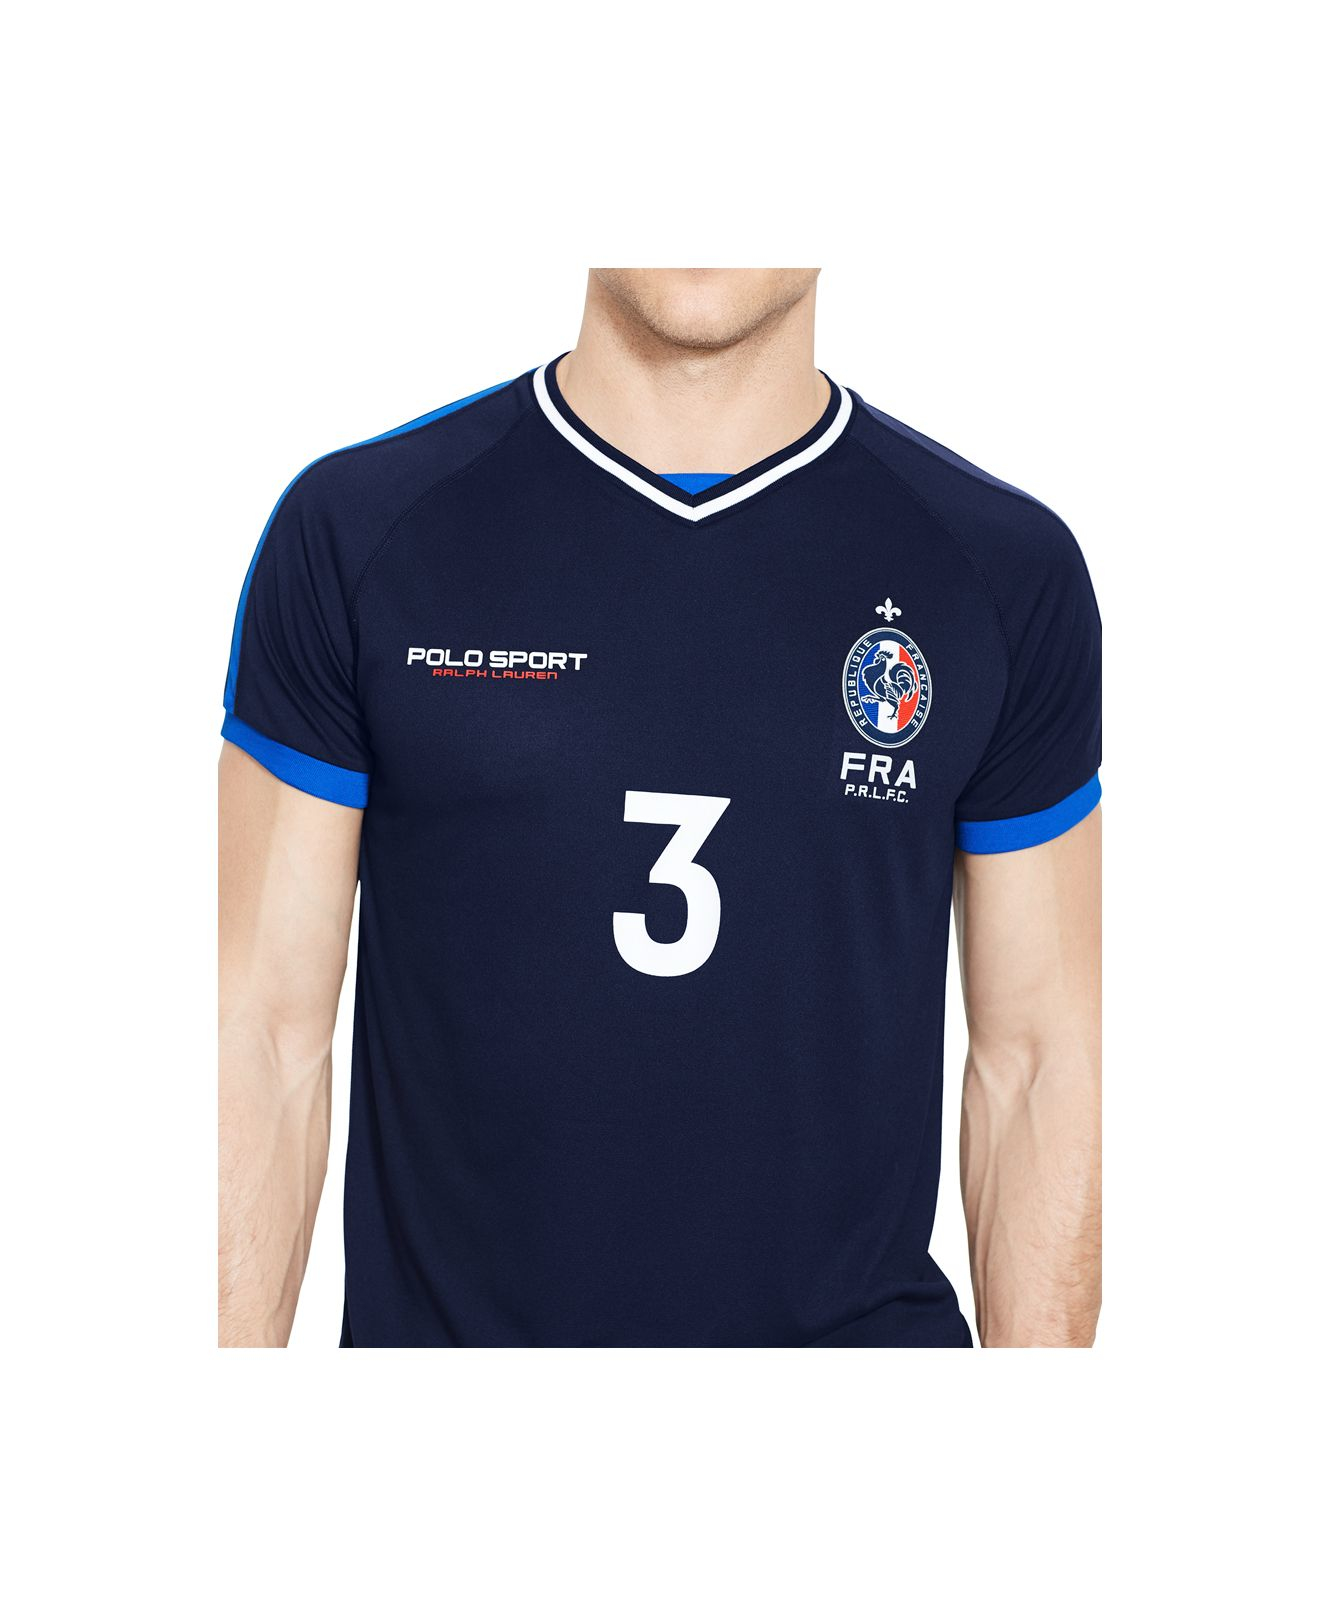 T-shirt de sport Made in France bleu pale - Natural Peak - infatigables